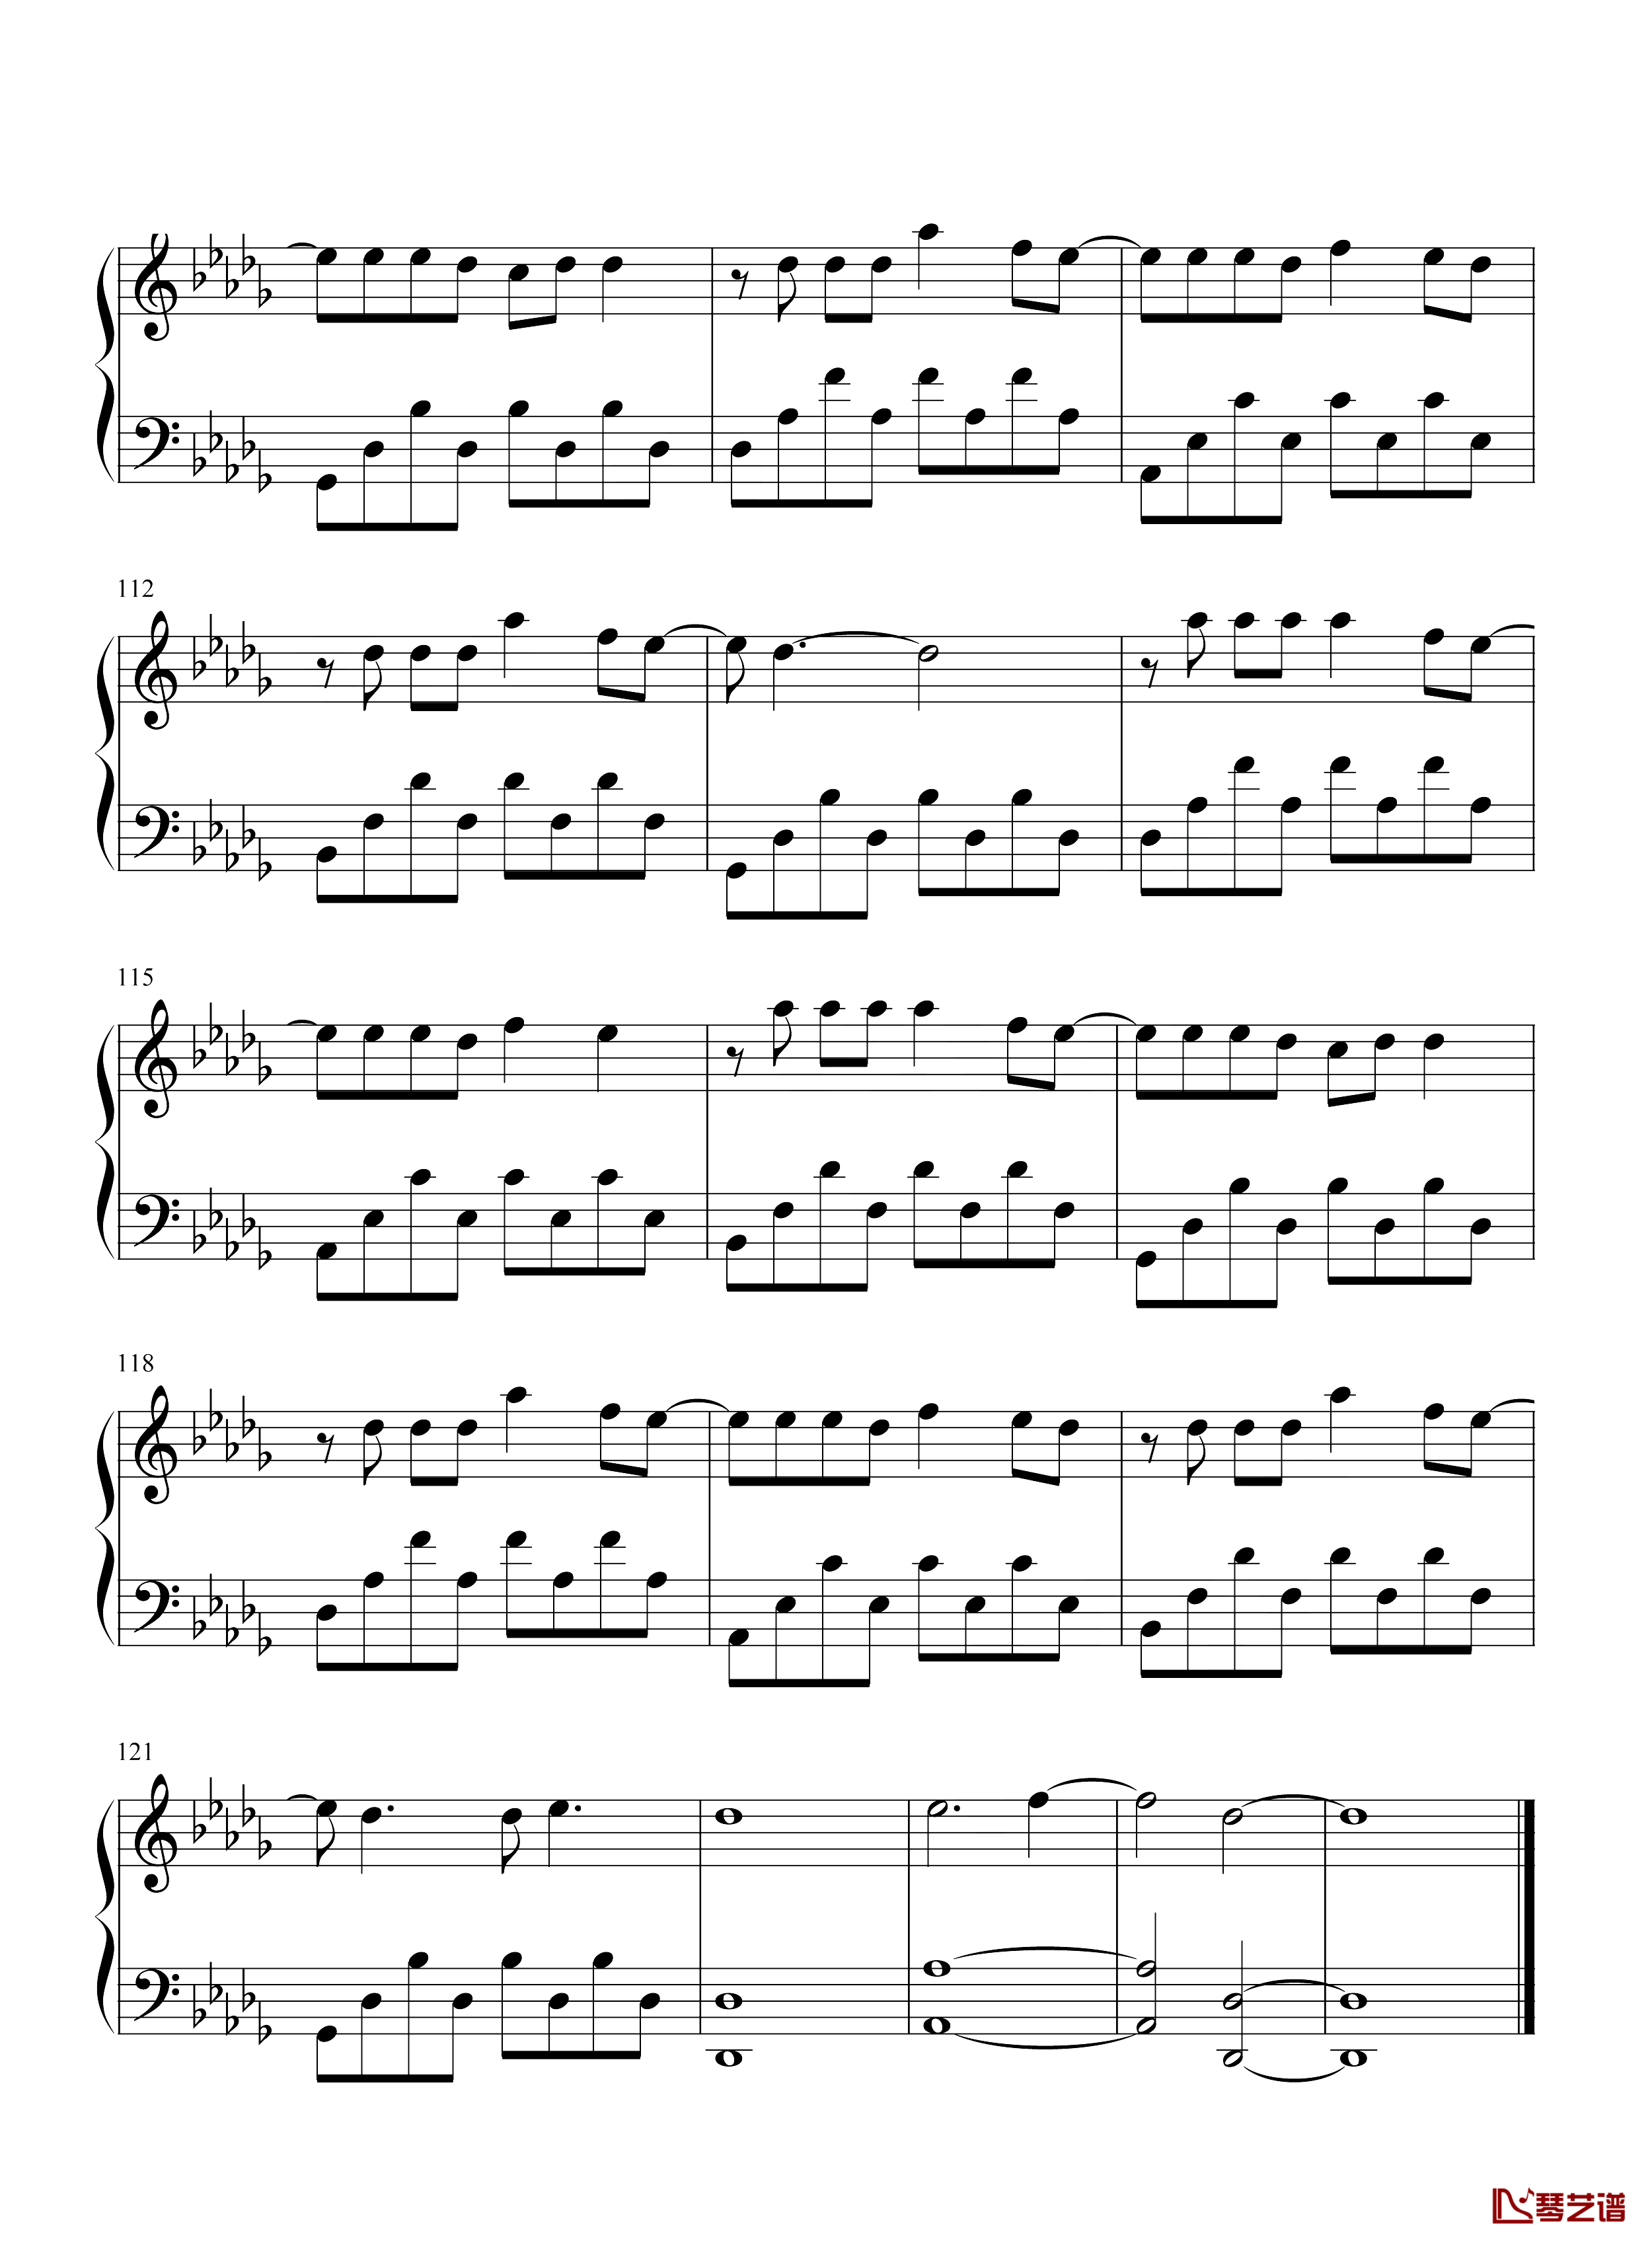 微微钢琴谱-完整版-傅如乔-微微她很渺小却从不疲倦，微微就是我们。8